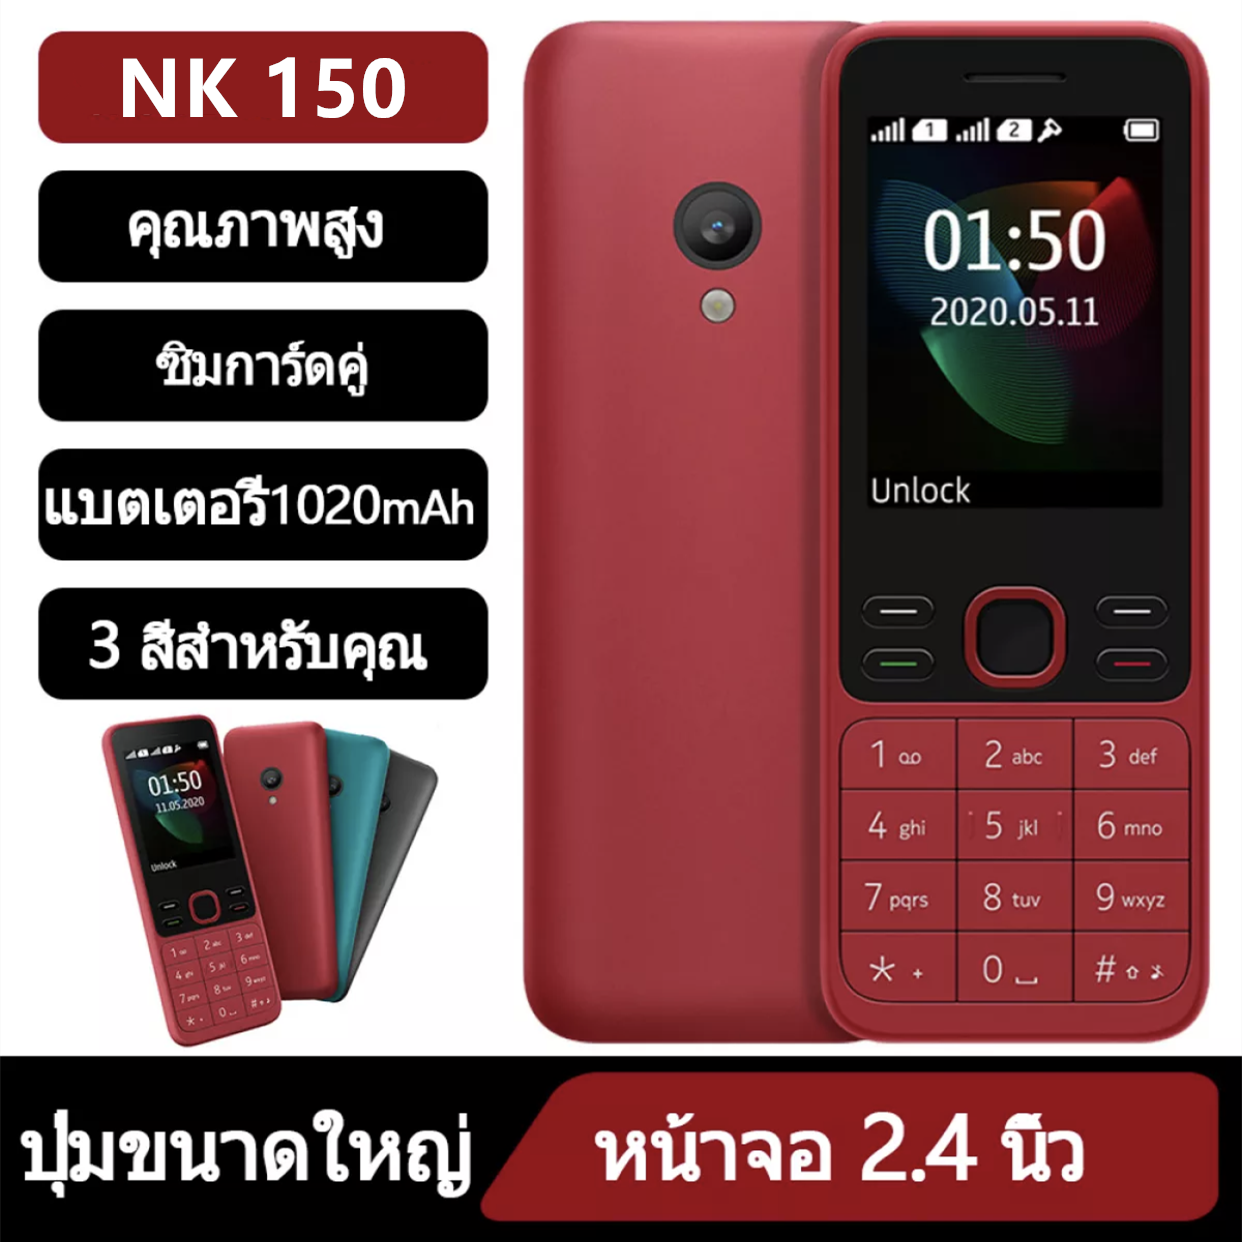 โปรโมชั่นพิเศษ มือถือ โทรศัพท์มือถือ NK 150 2 ซิม โทรศัพท์มือถือปุ่มกด ใหม่ล่าสุด ปุ่มกดไทย เมนูไทย จอใหญ่ 2.4 นิ้ว